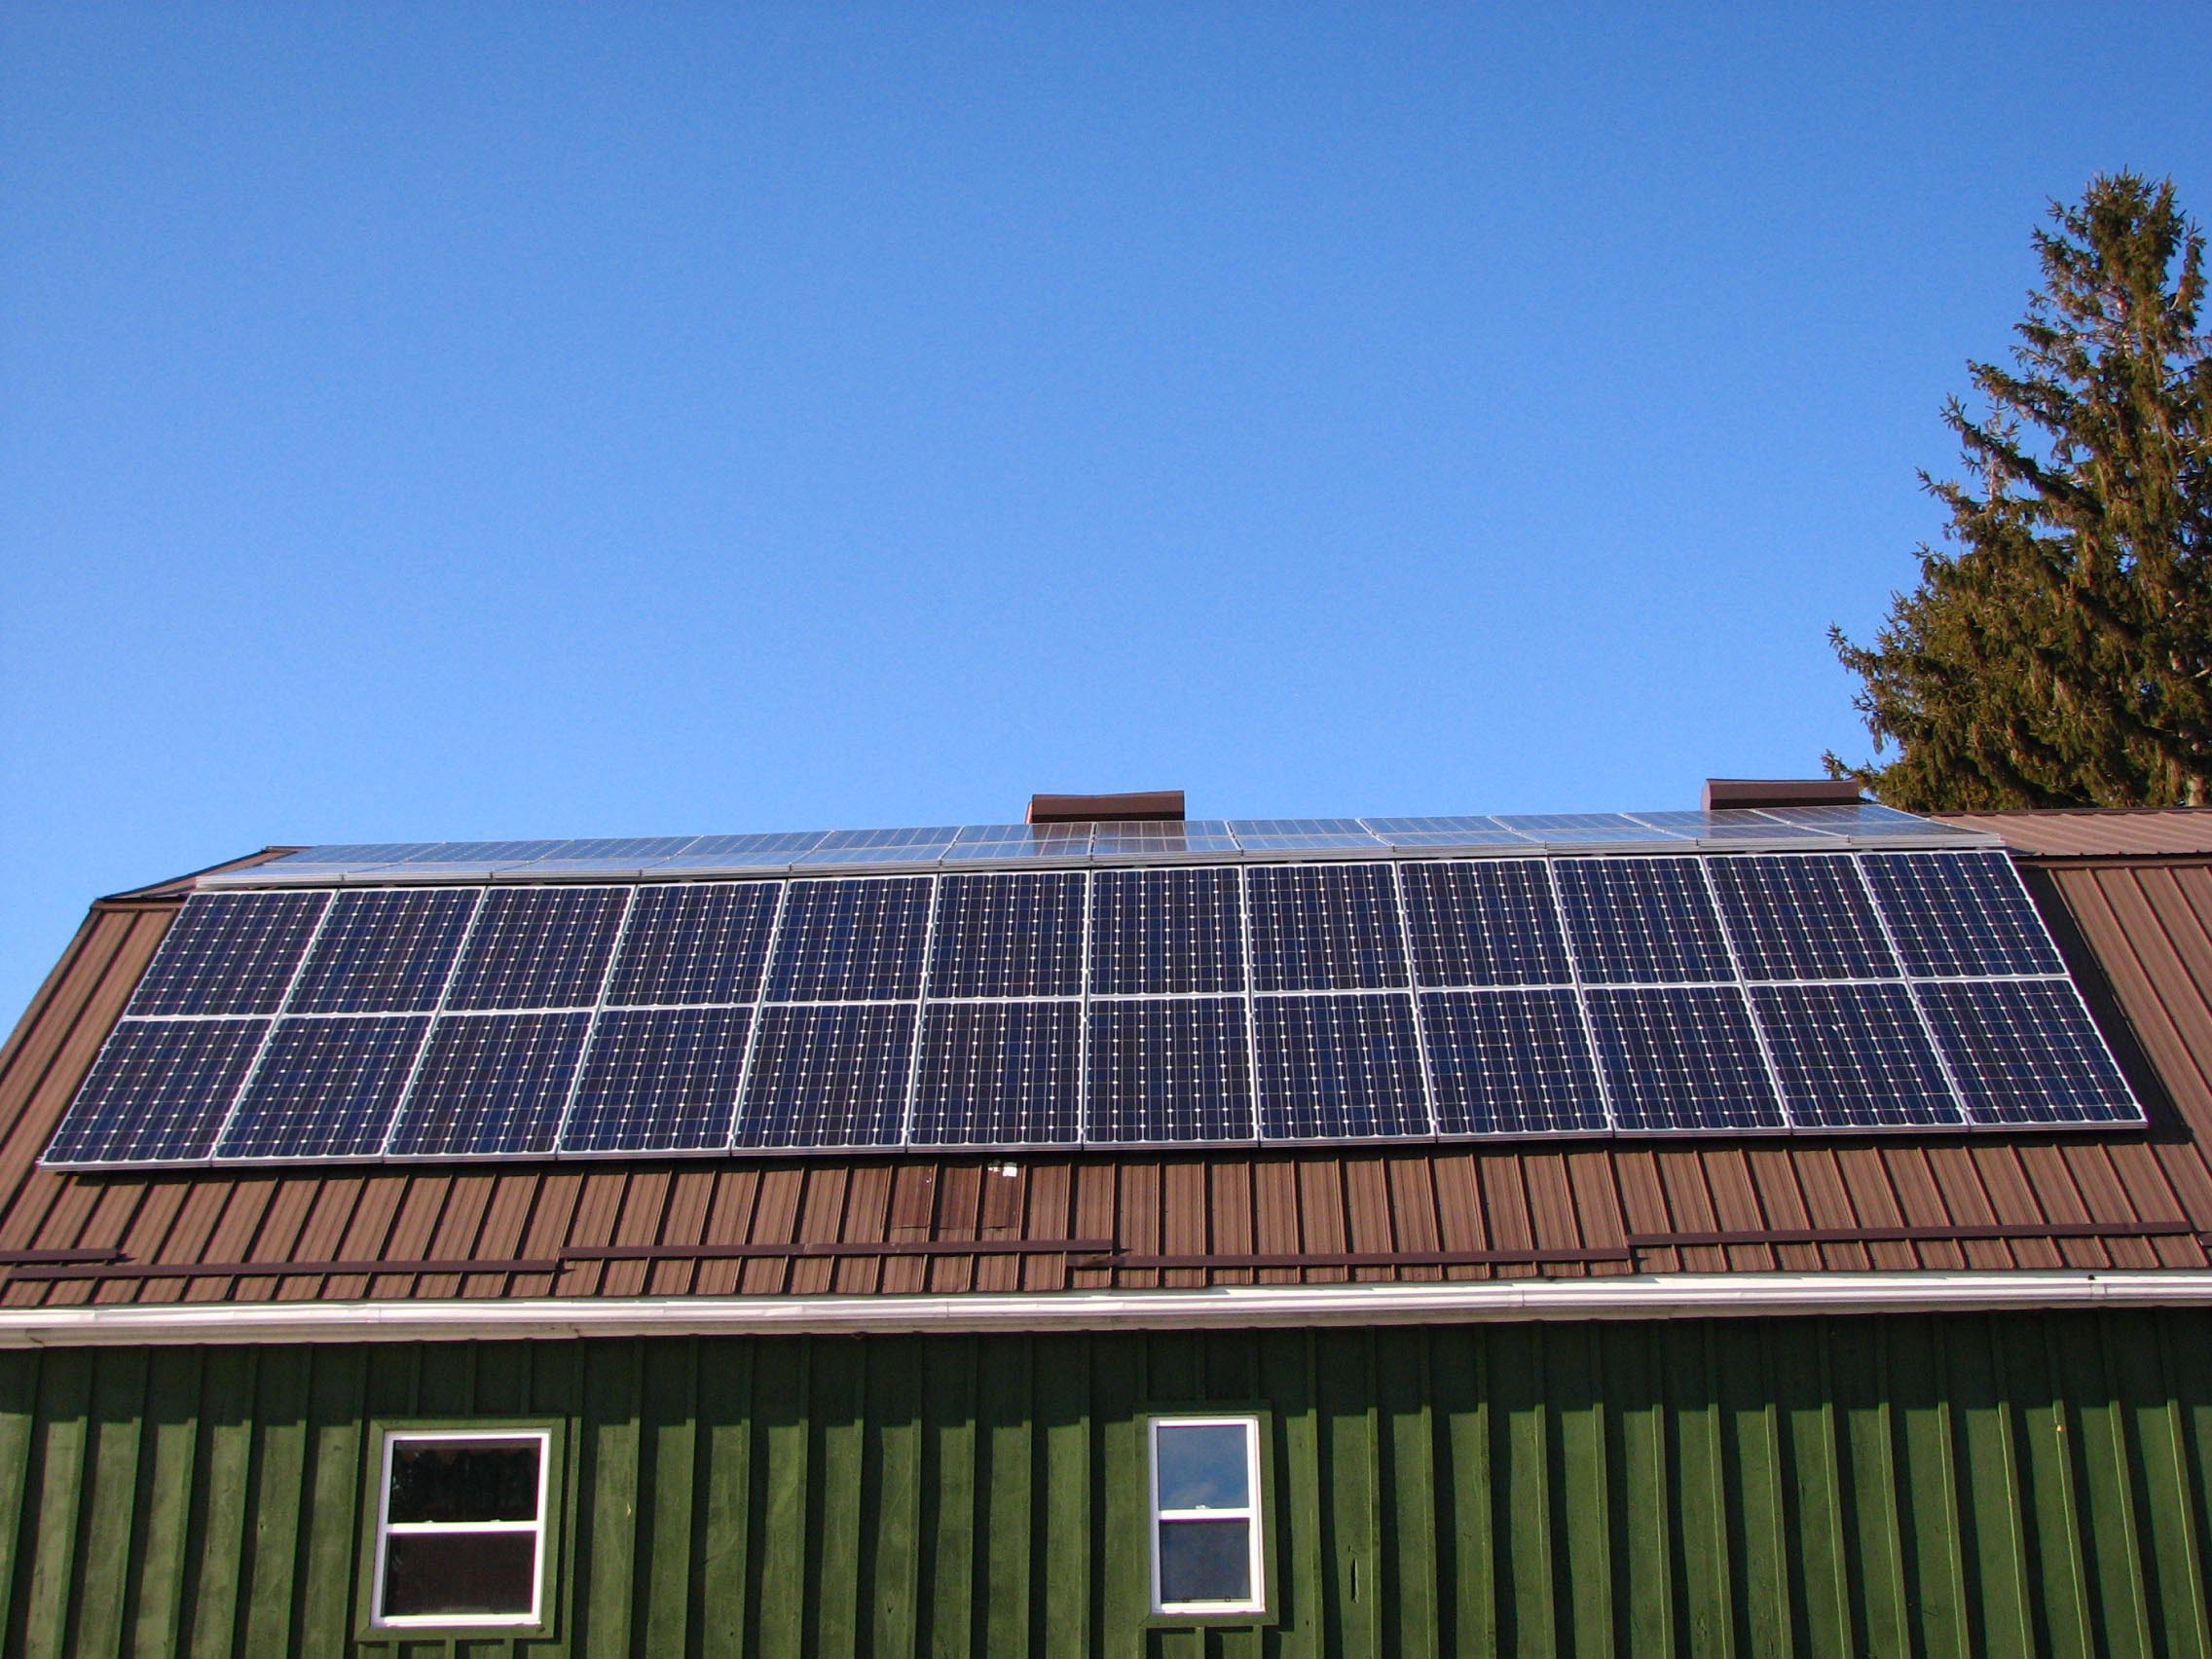 Comment déneiger des panneaux solaires ? 5 solutions